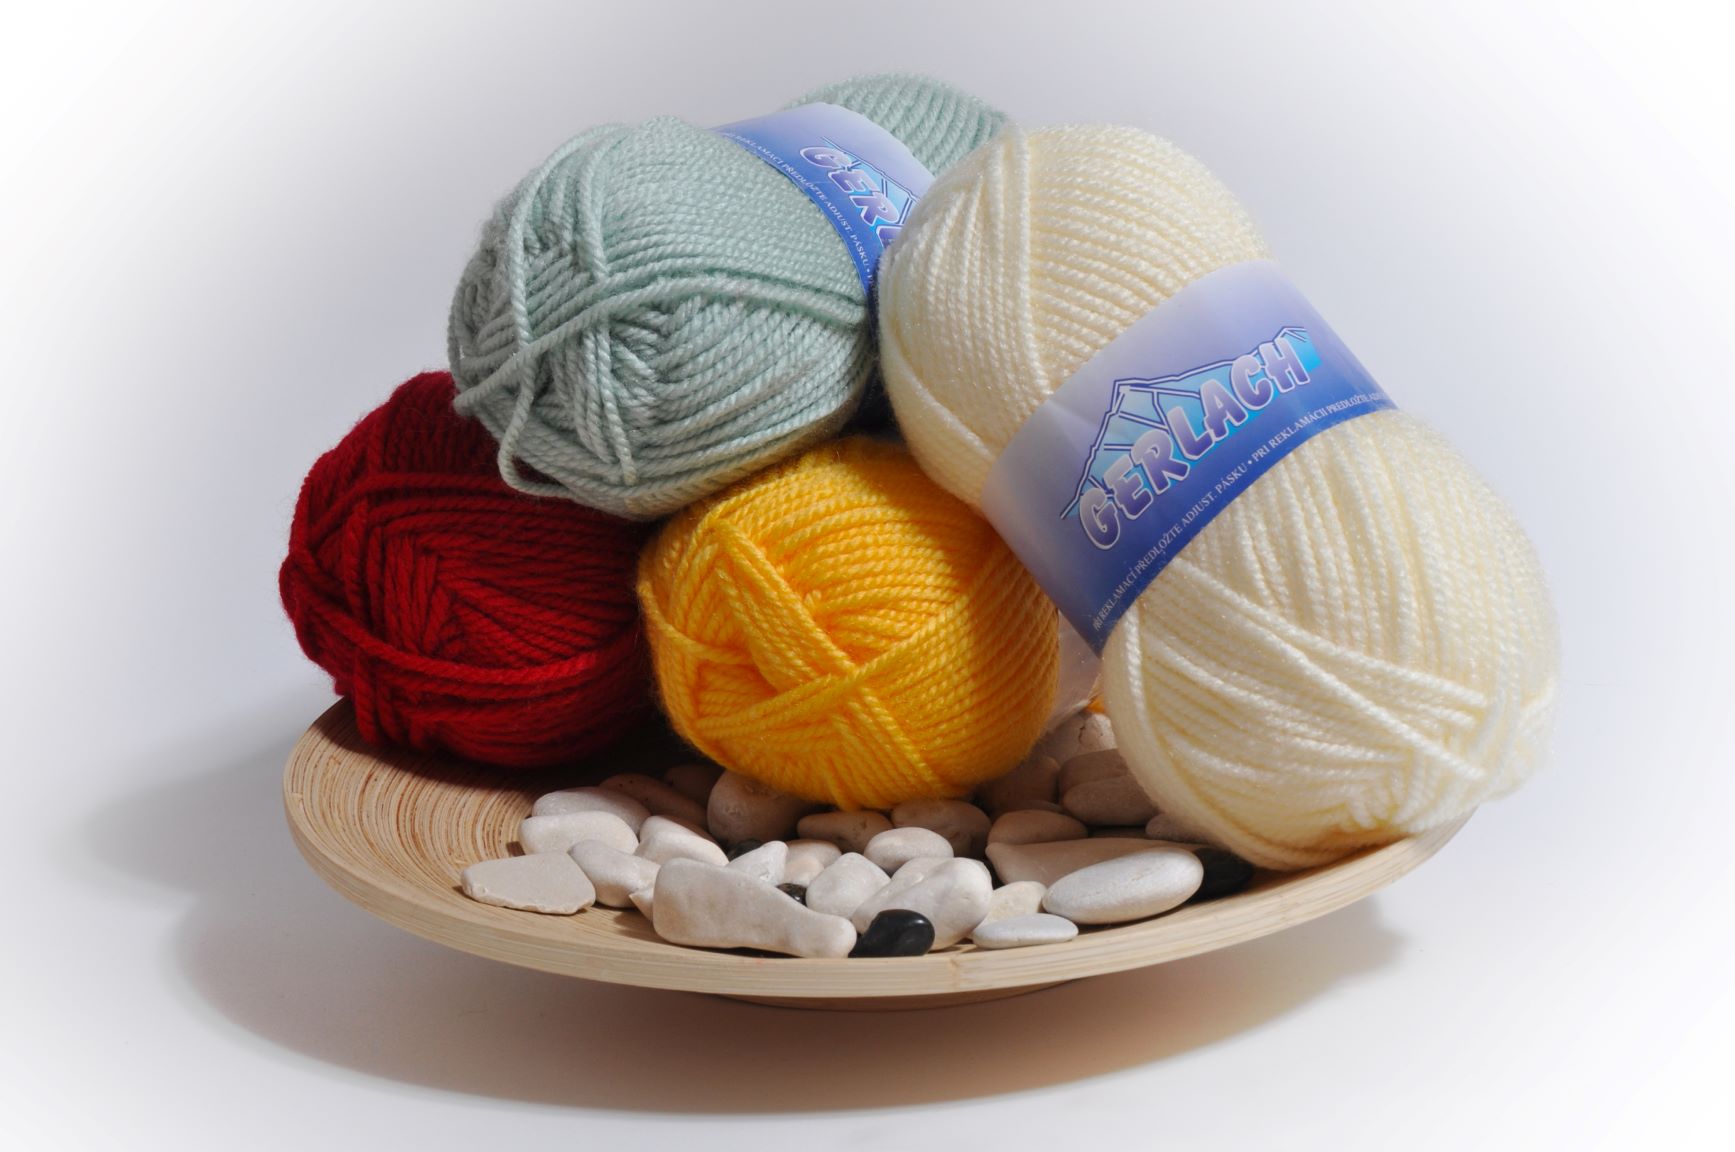 Knitting yarn Elian Gerlach